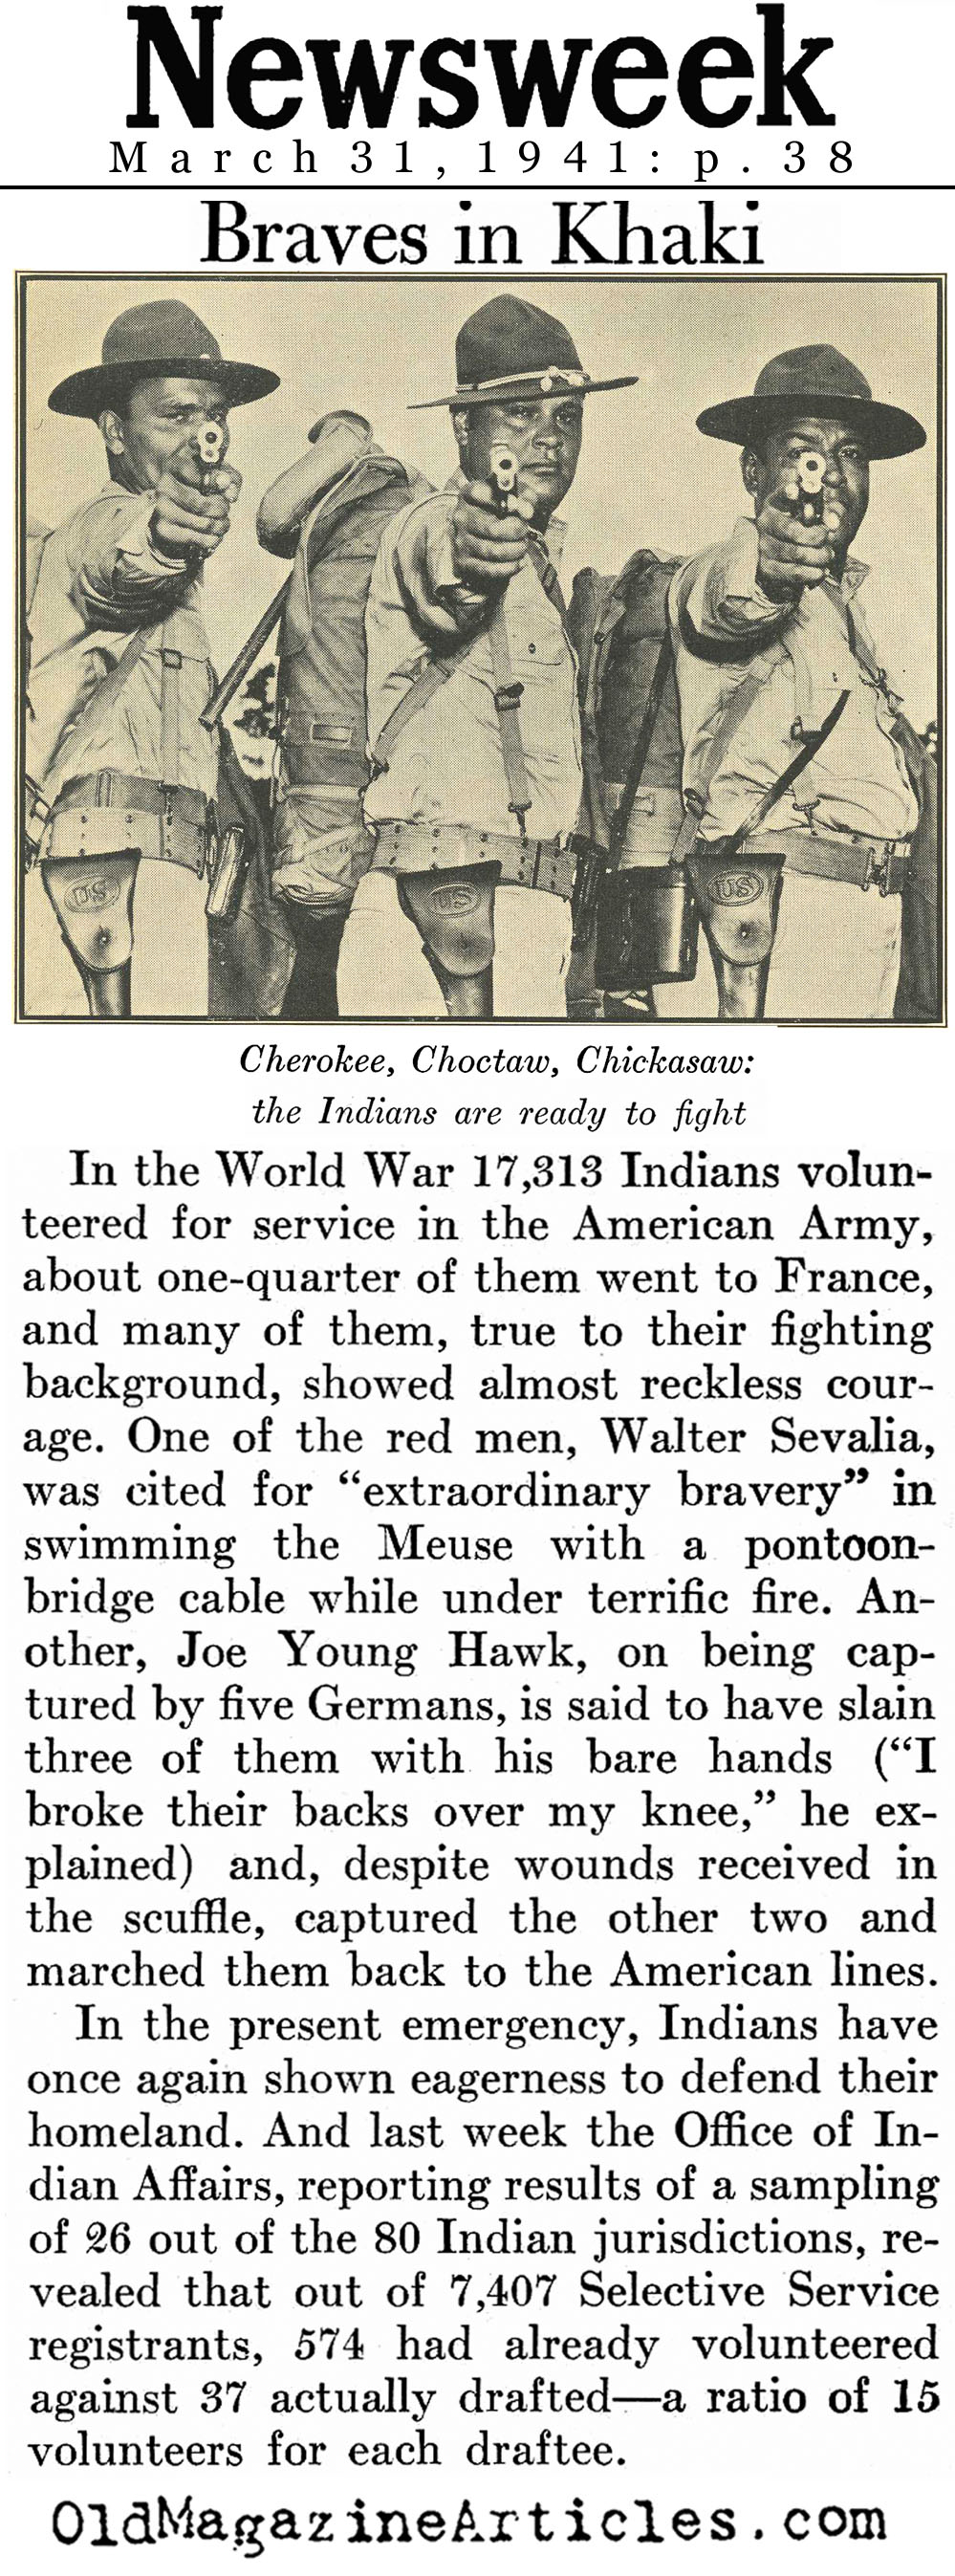 American Indians Step Up - Again (Newsweek Magazine, 1941)